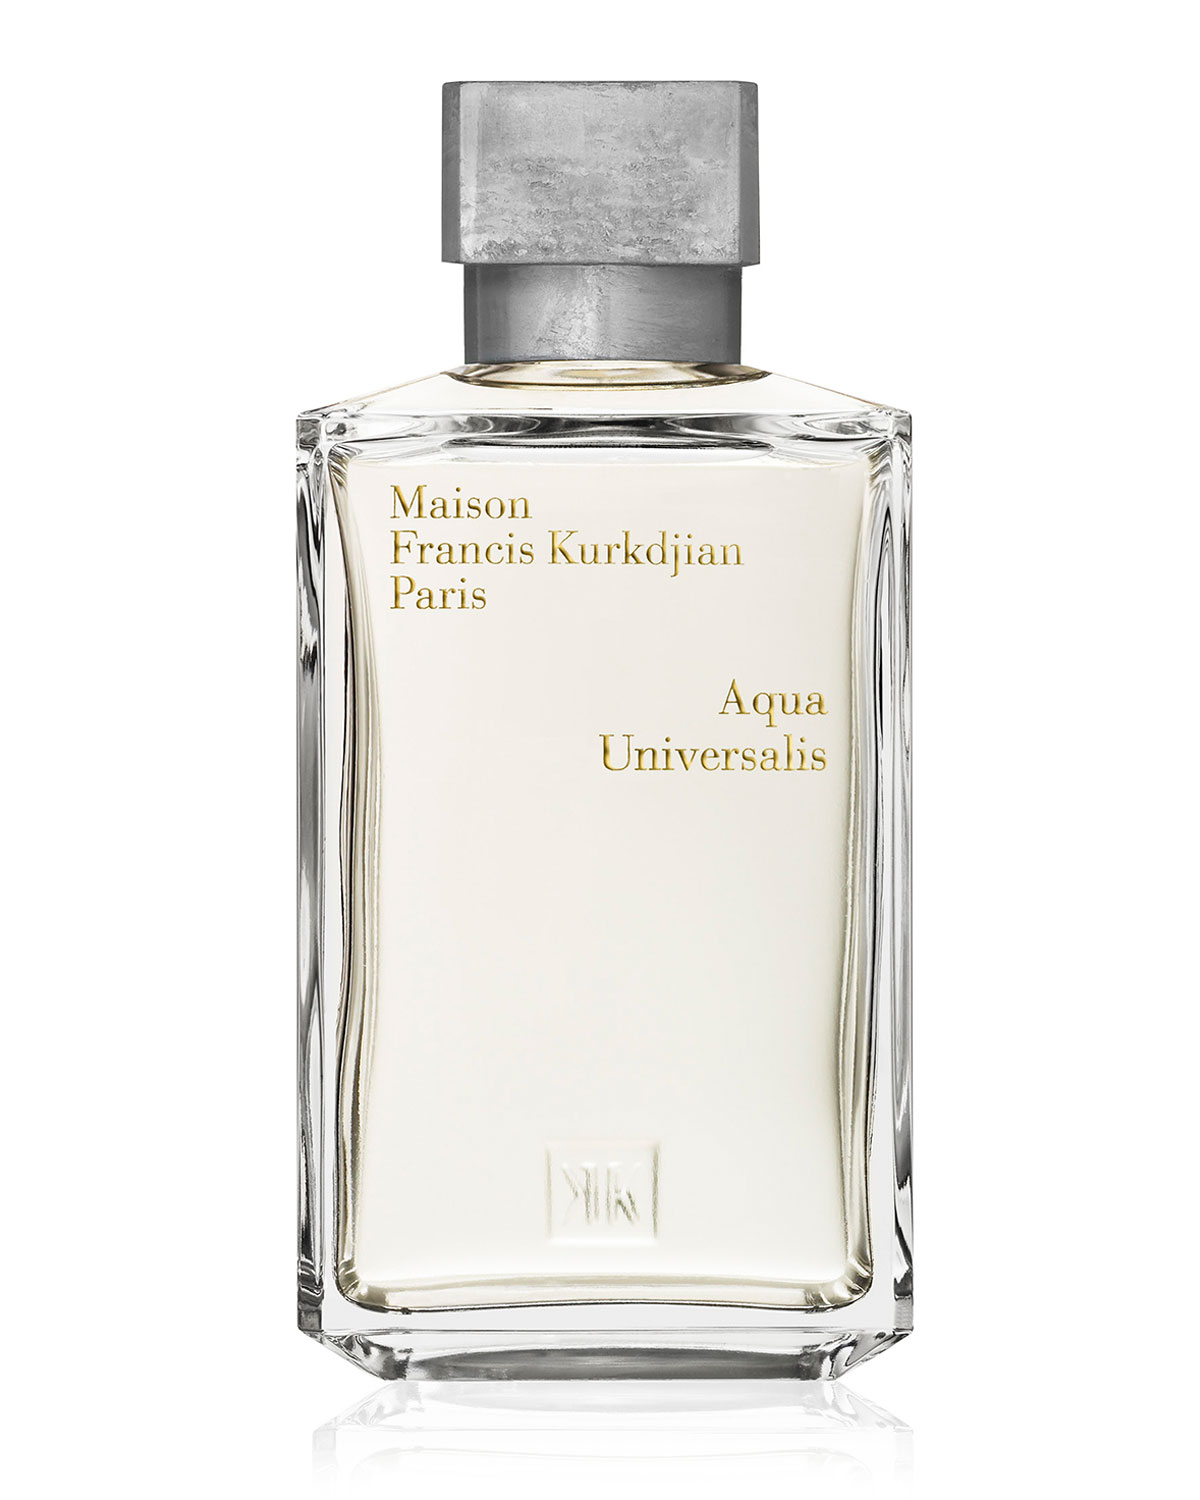 parfum pria terbaik - maison francis